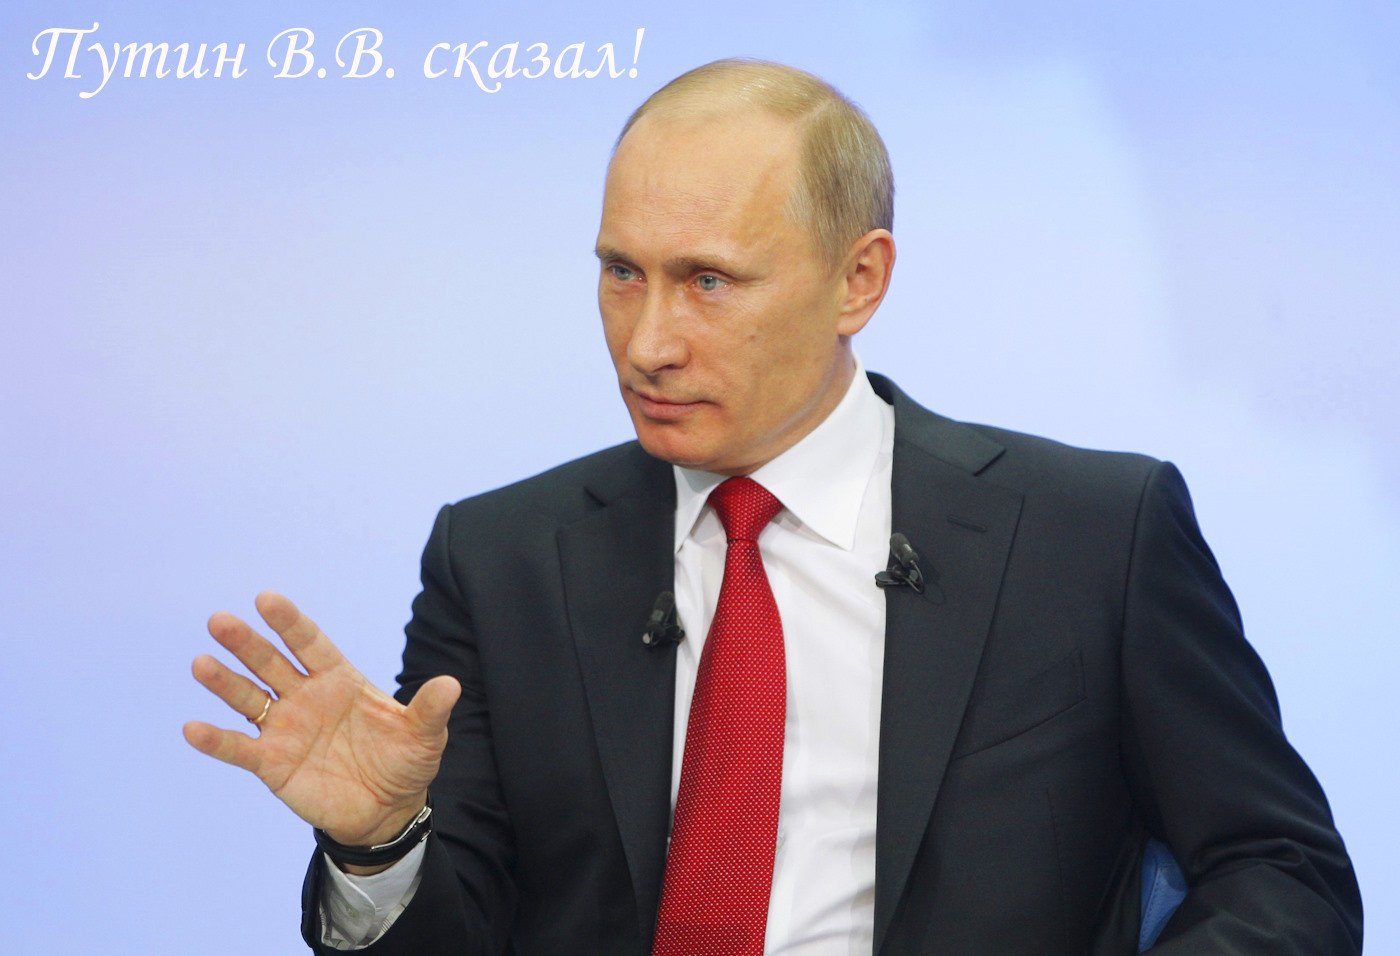 Путин В.В. сказал - рис